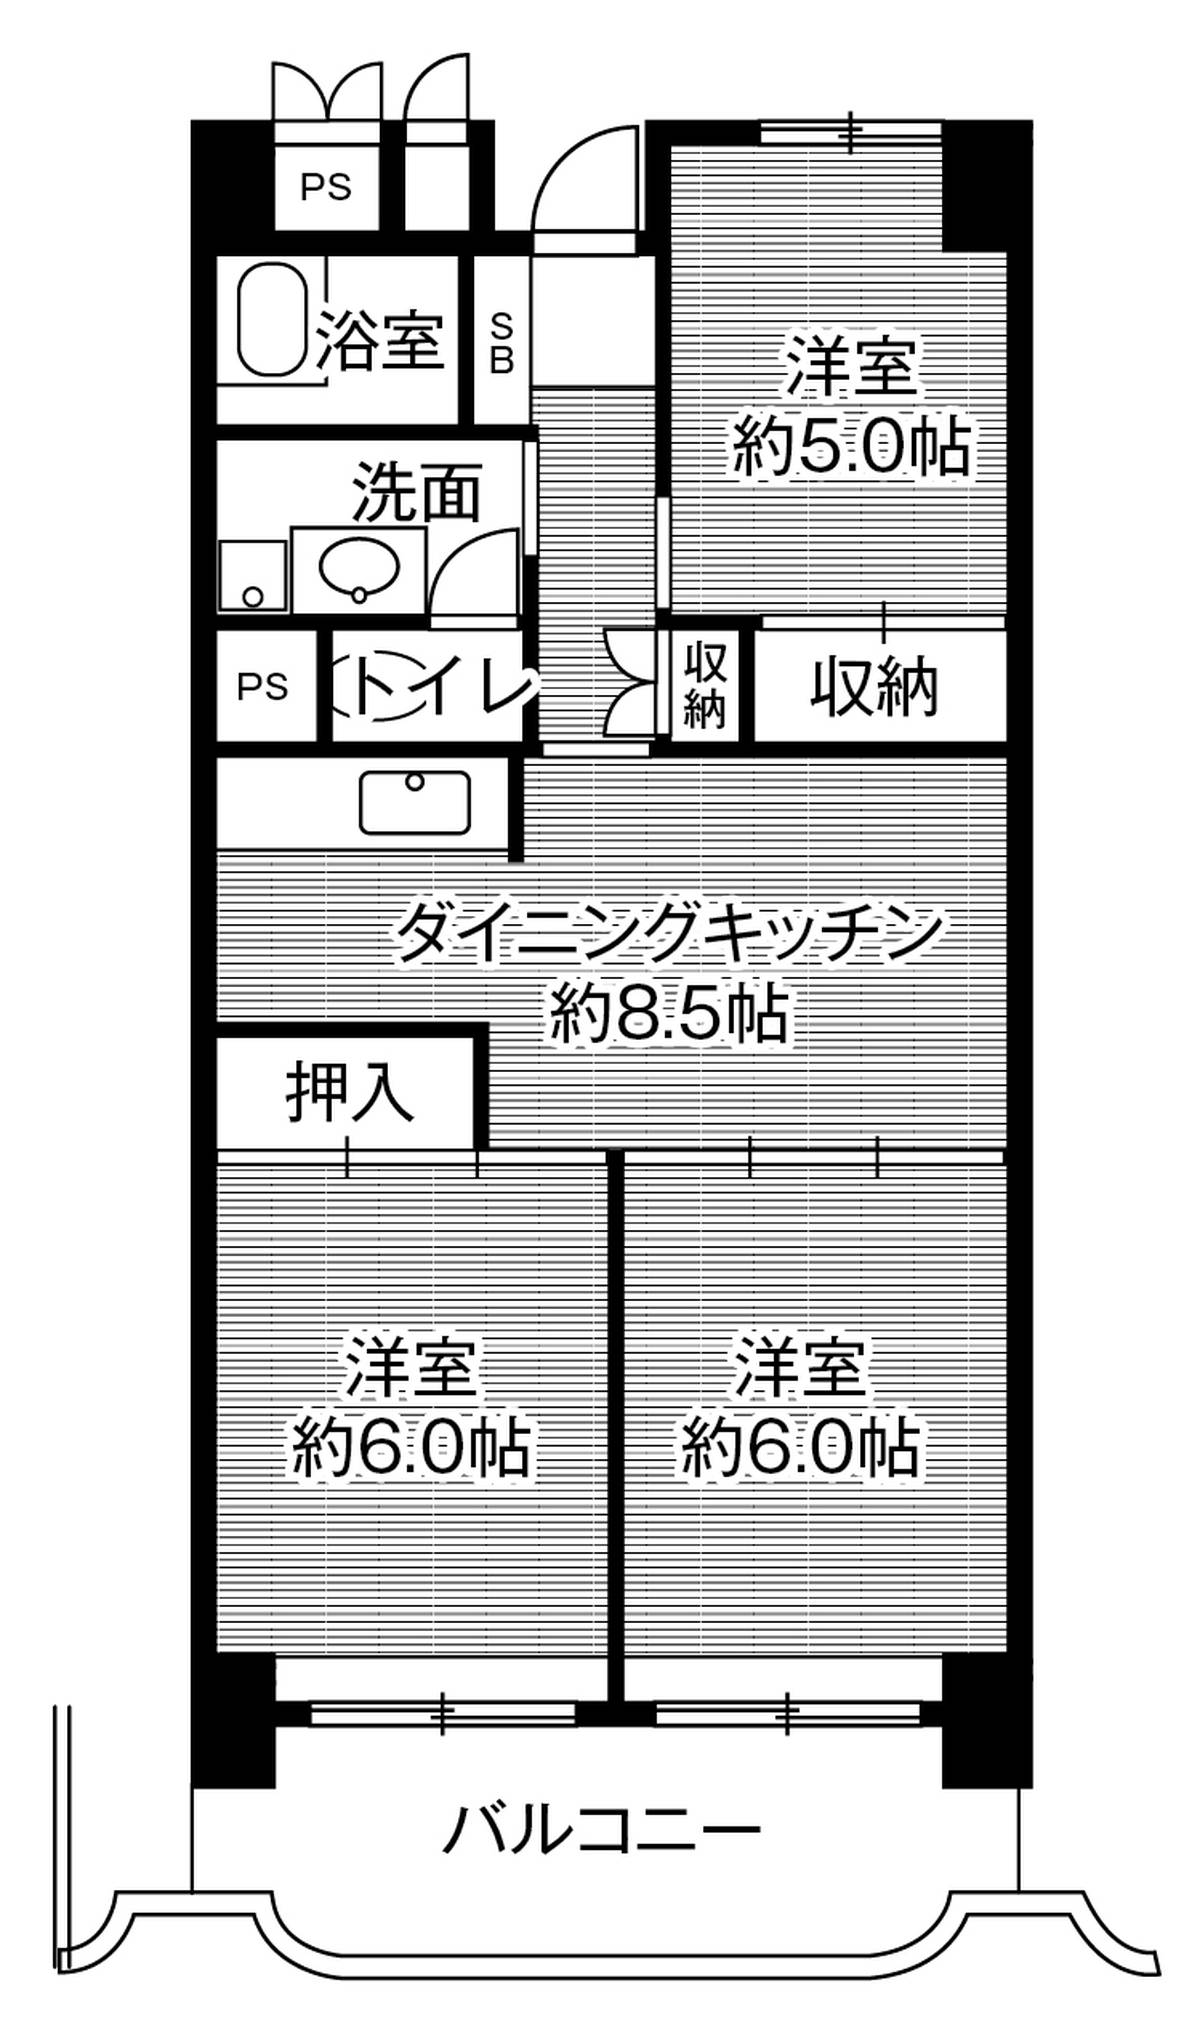 位于岐阜市的Village House 岐阜 Tower的平面图3DK